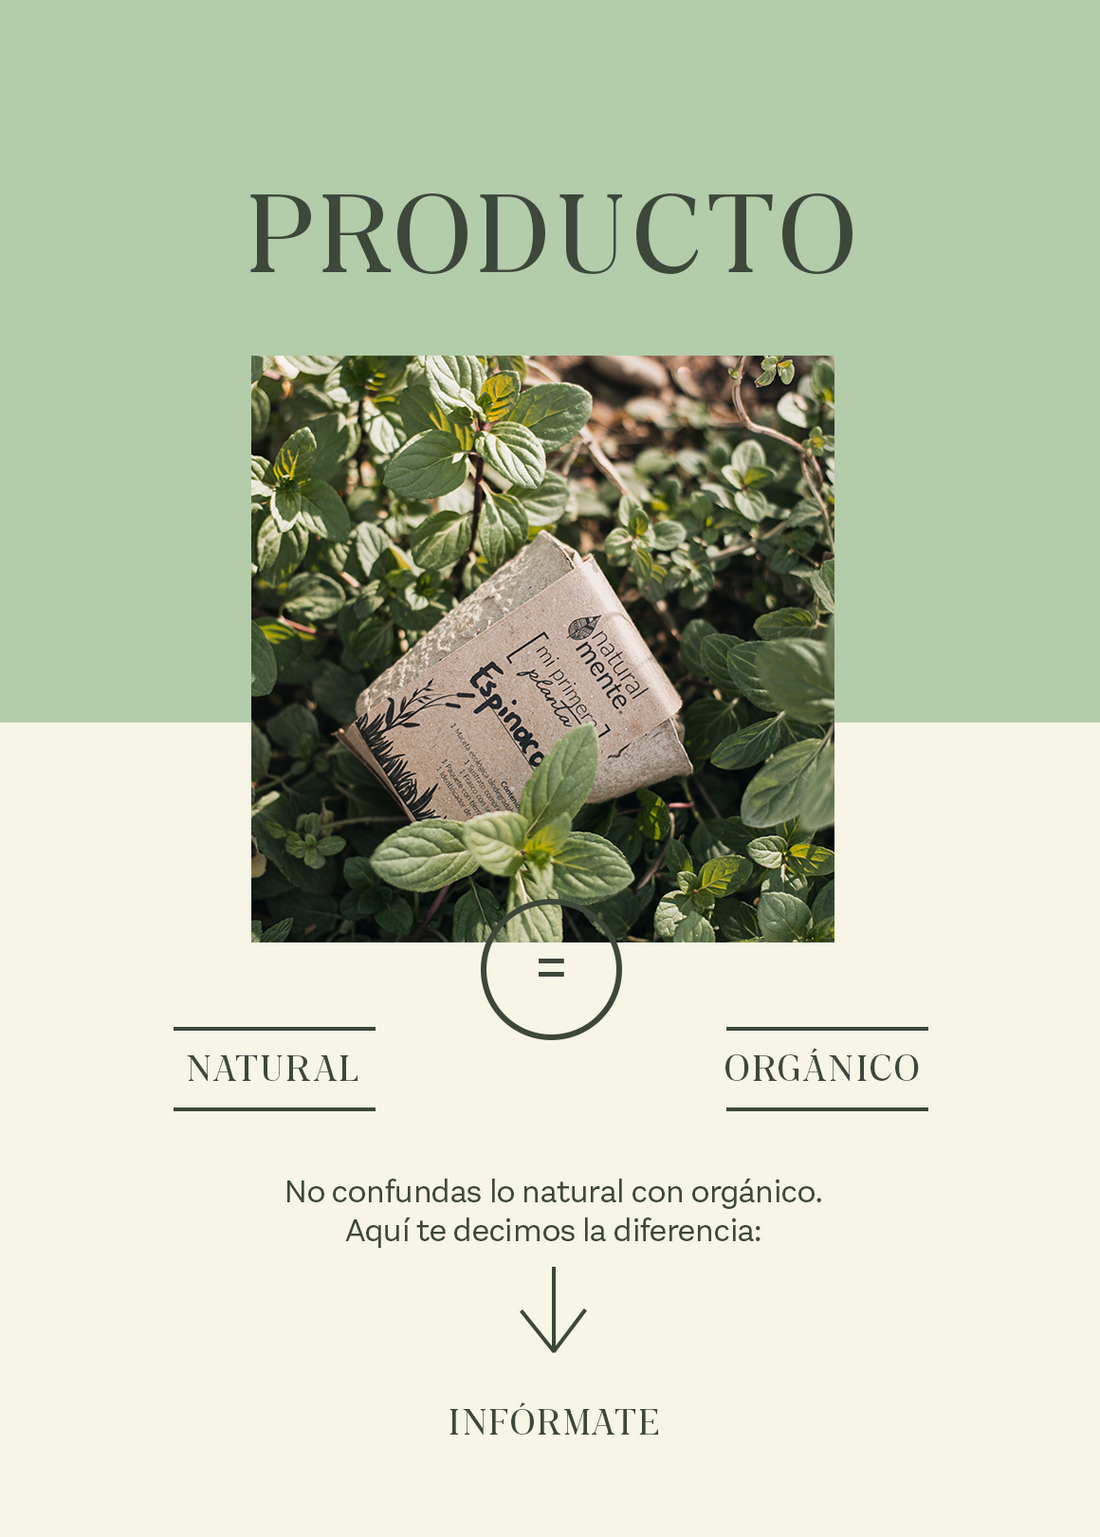 ¿Producto natural es igual a orgánico?